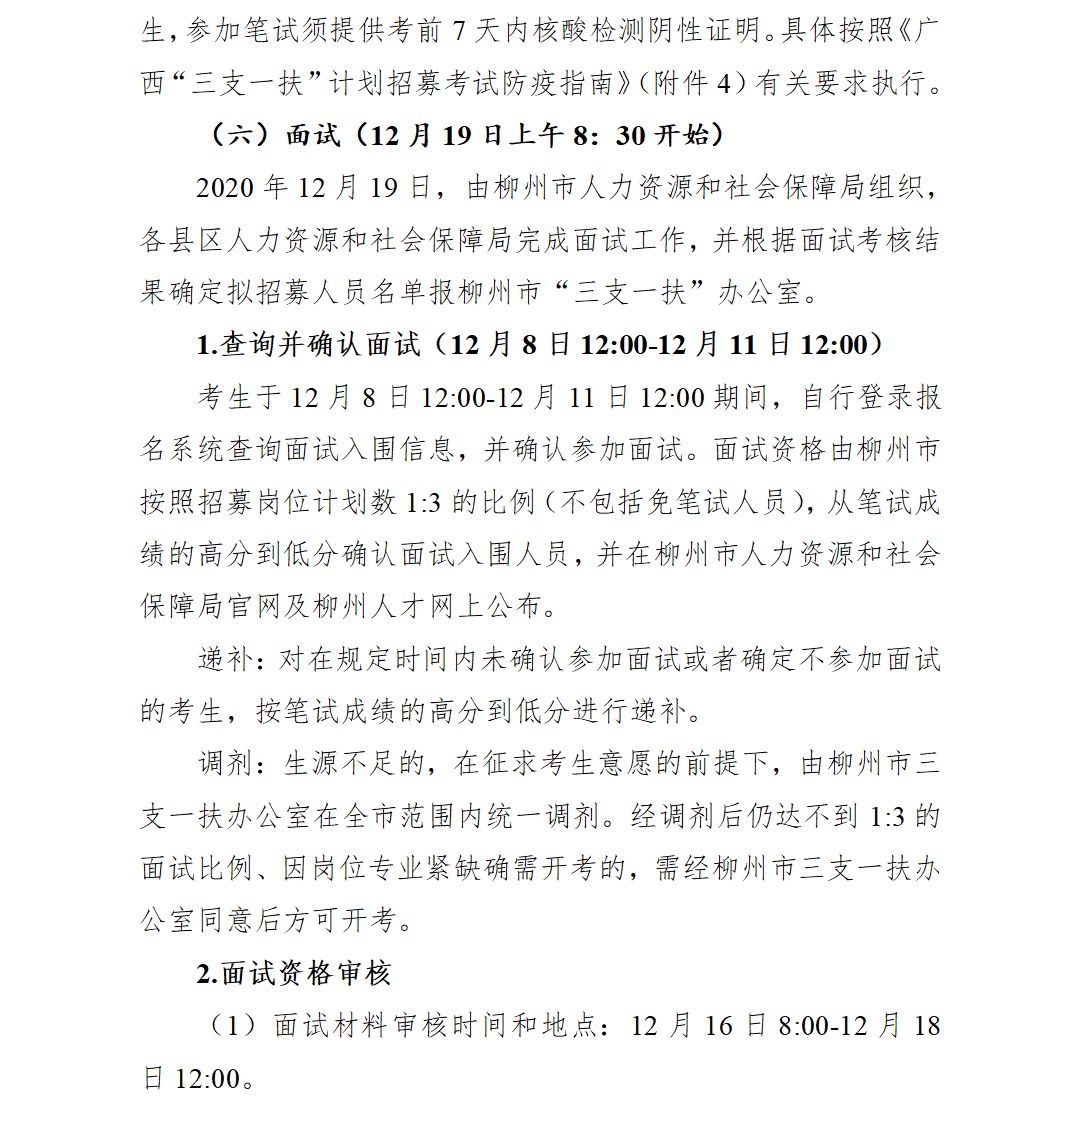 “柳州板栗园LNG充装站”规划总平（2016－0088#）已经我局批准 - 规划总平图批后公布 - 广西柳州市自然资源和规划局网站